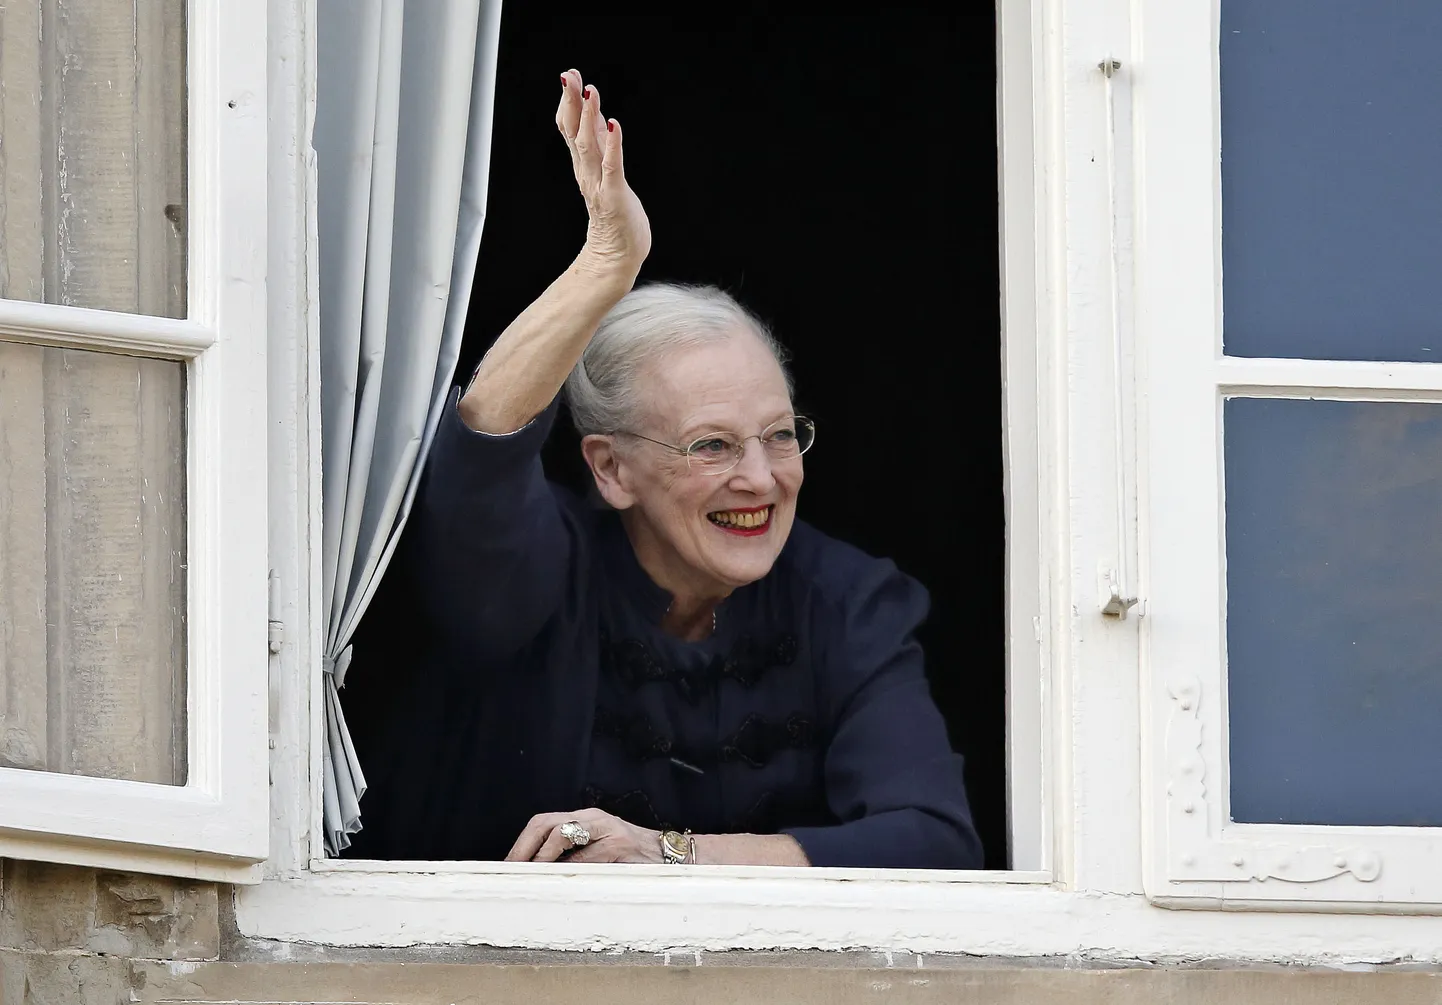 Taani kuninganna Margrethe II lehvitamas 16. aprillil 2015 Fredensborgi lossi aknast